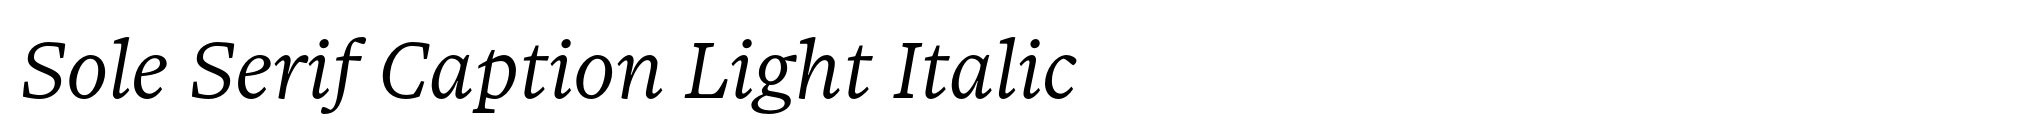 Sole Serif Caption Light Italic image